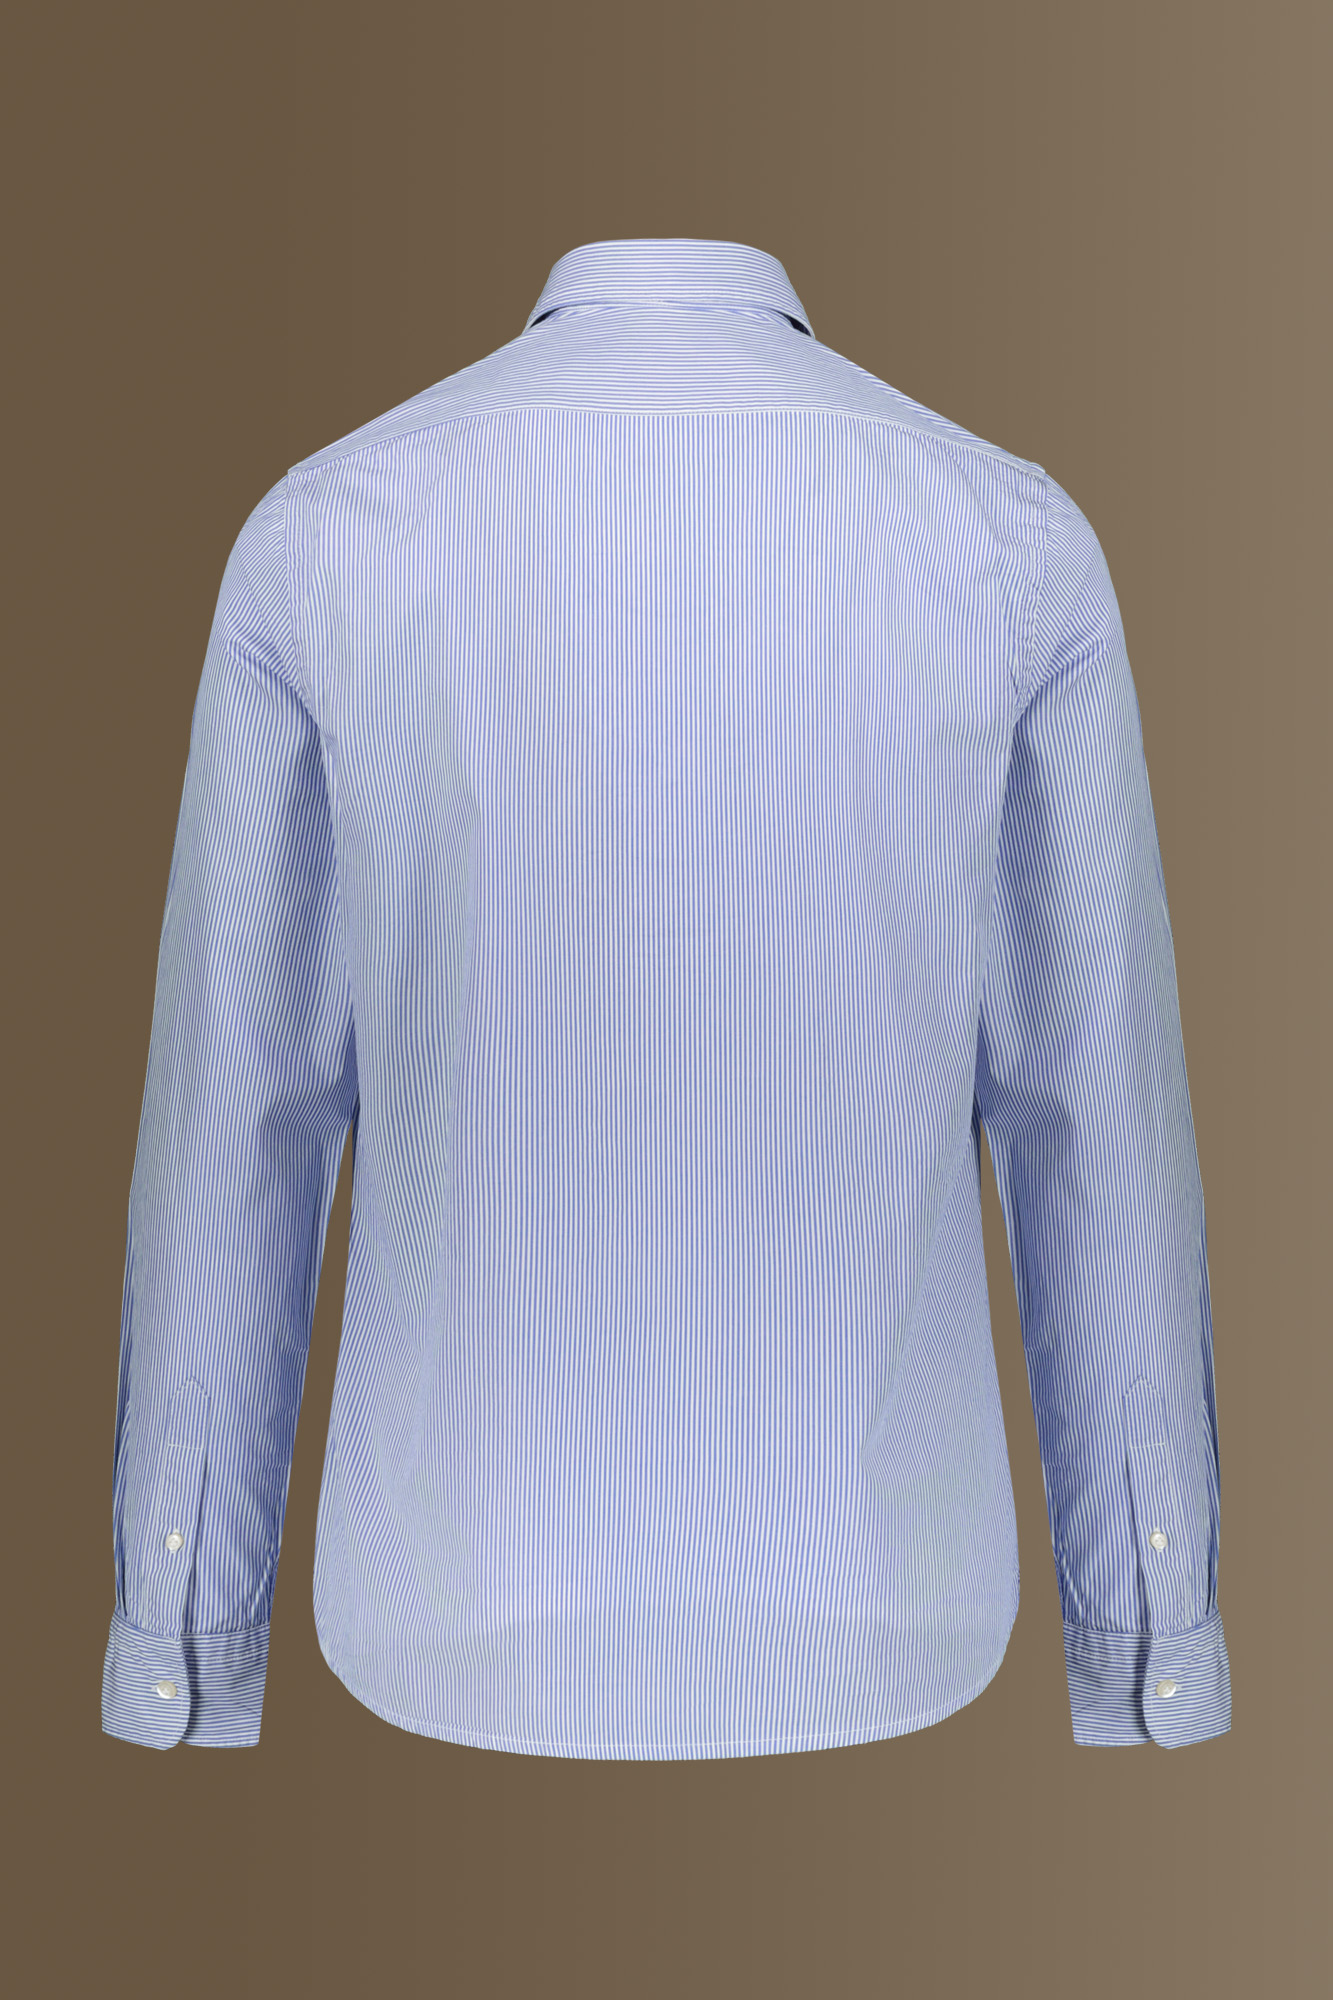 Camicia uomo classica lavata 100% cotone collo francese tinto filo popeline riga stretta image number 1